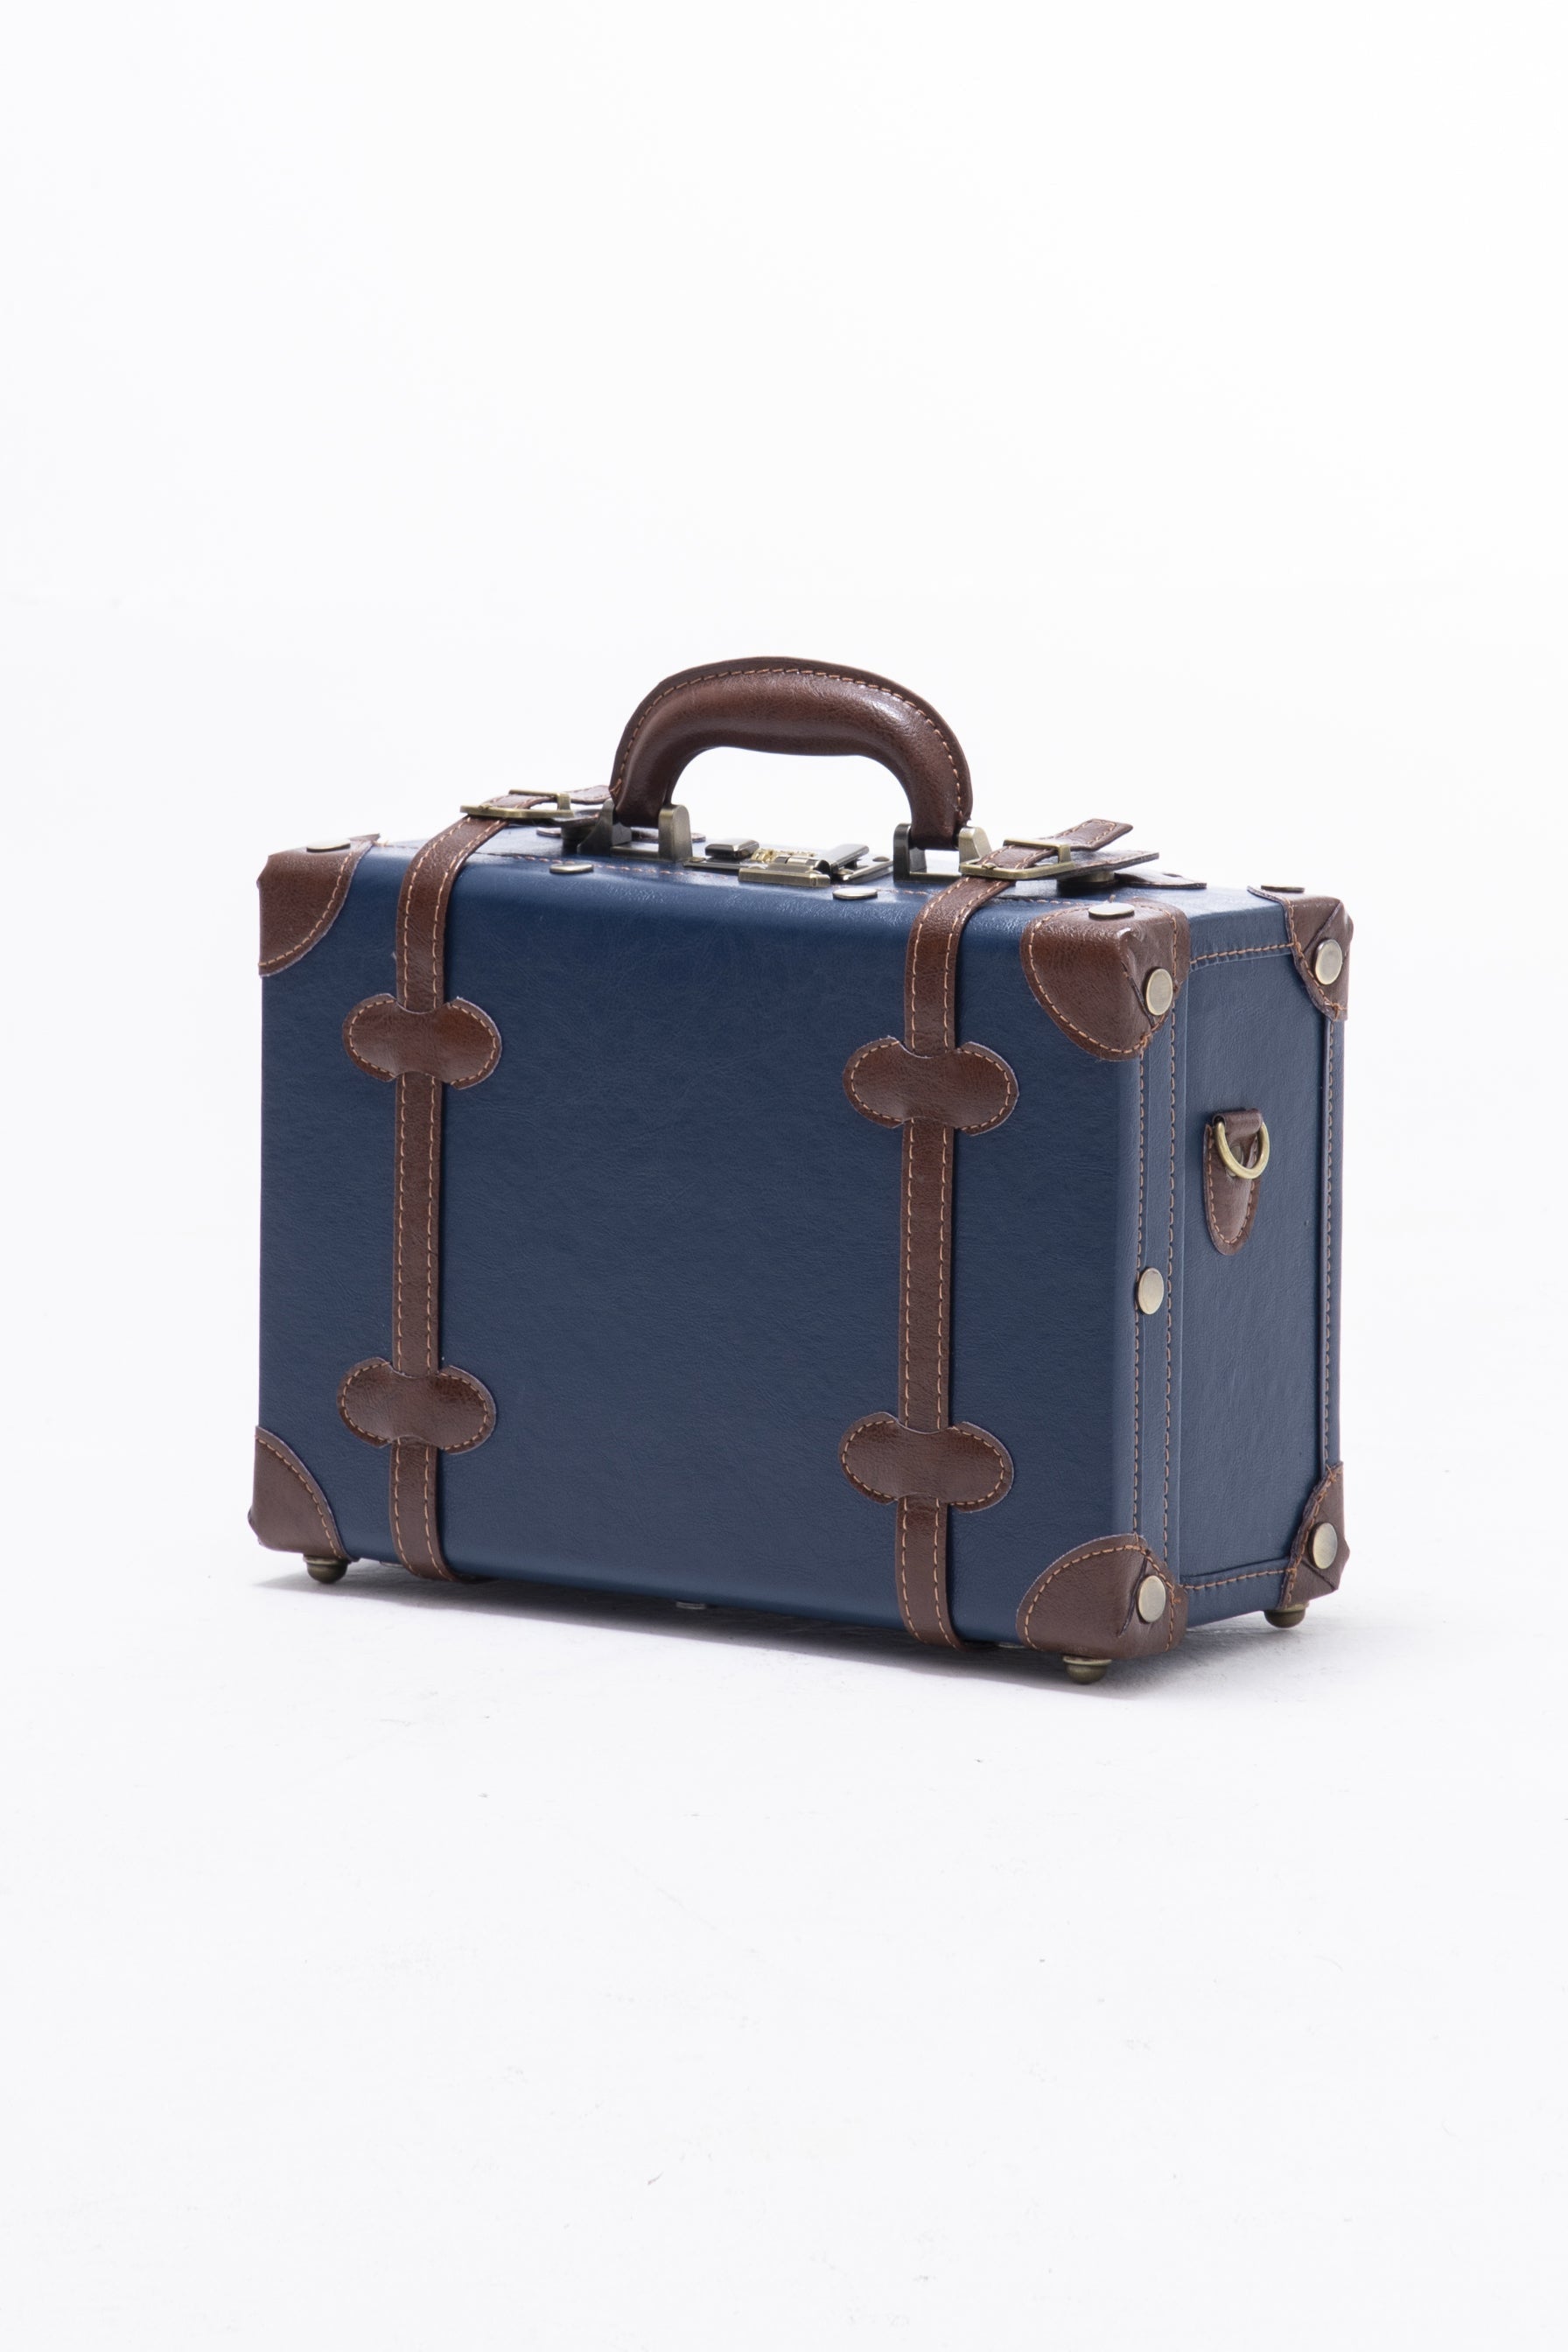 (United States) Minimalism 3 Pieces Luggage Set - Navy Blue's